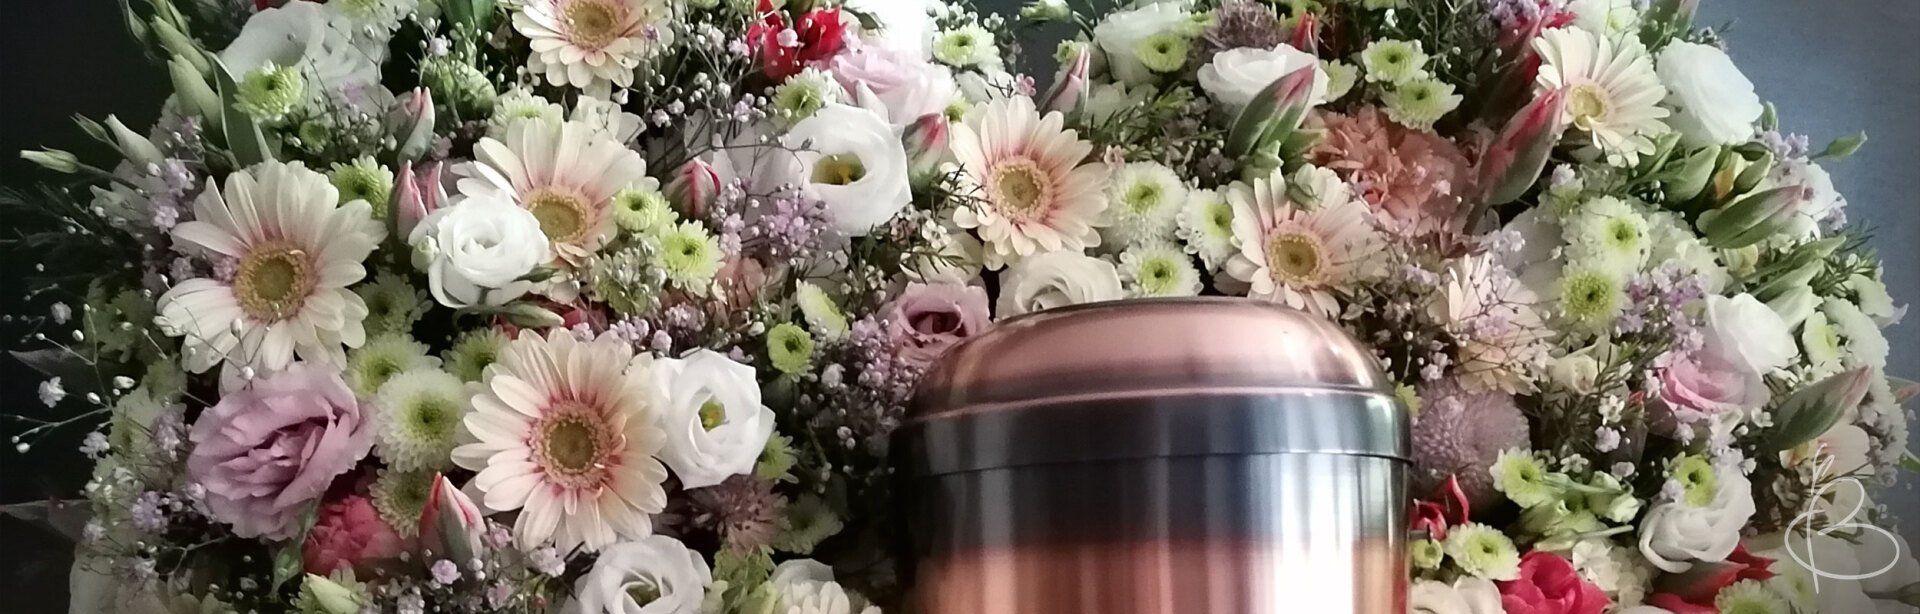 Trauerfloristik Grabblumen Kranz für Grab Urne